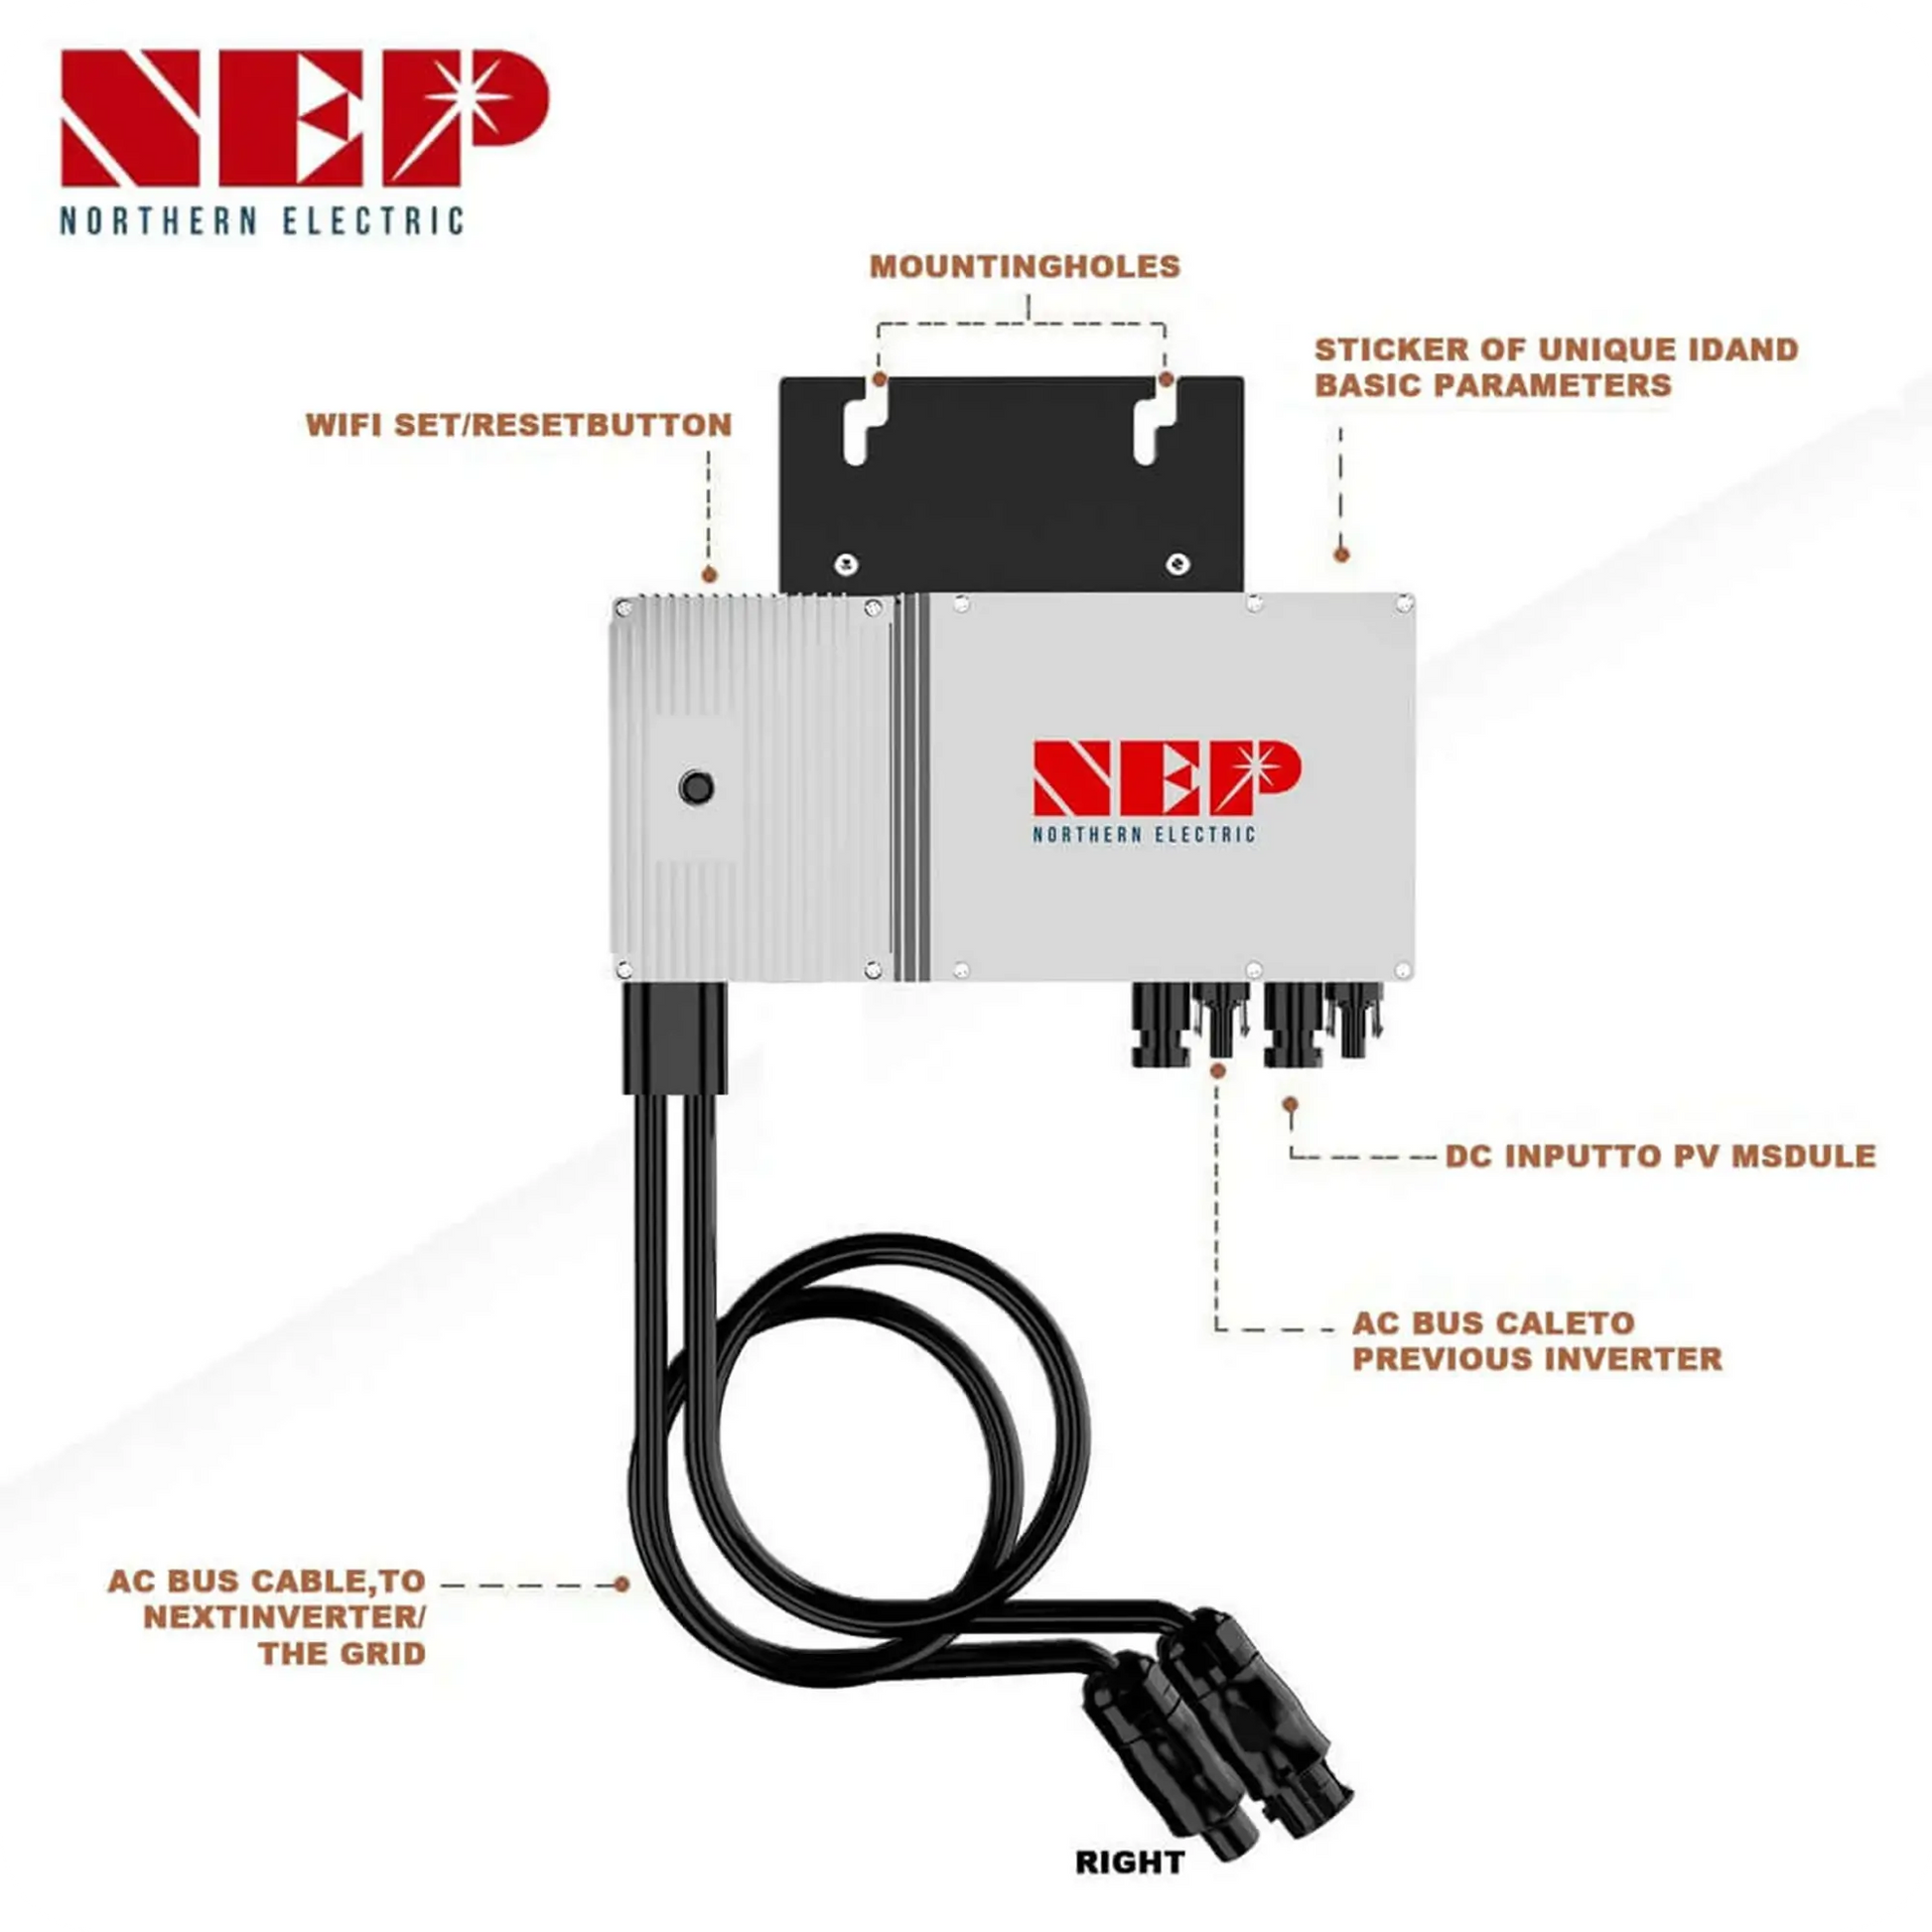 NEP 600W Reine Sinuswelle Smart Micro Wechselrichter Netzwechselrichter IP67 - SongSolar